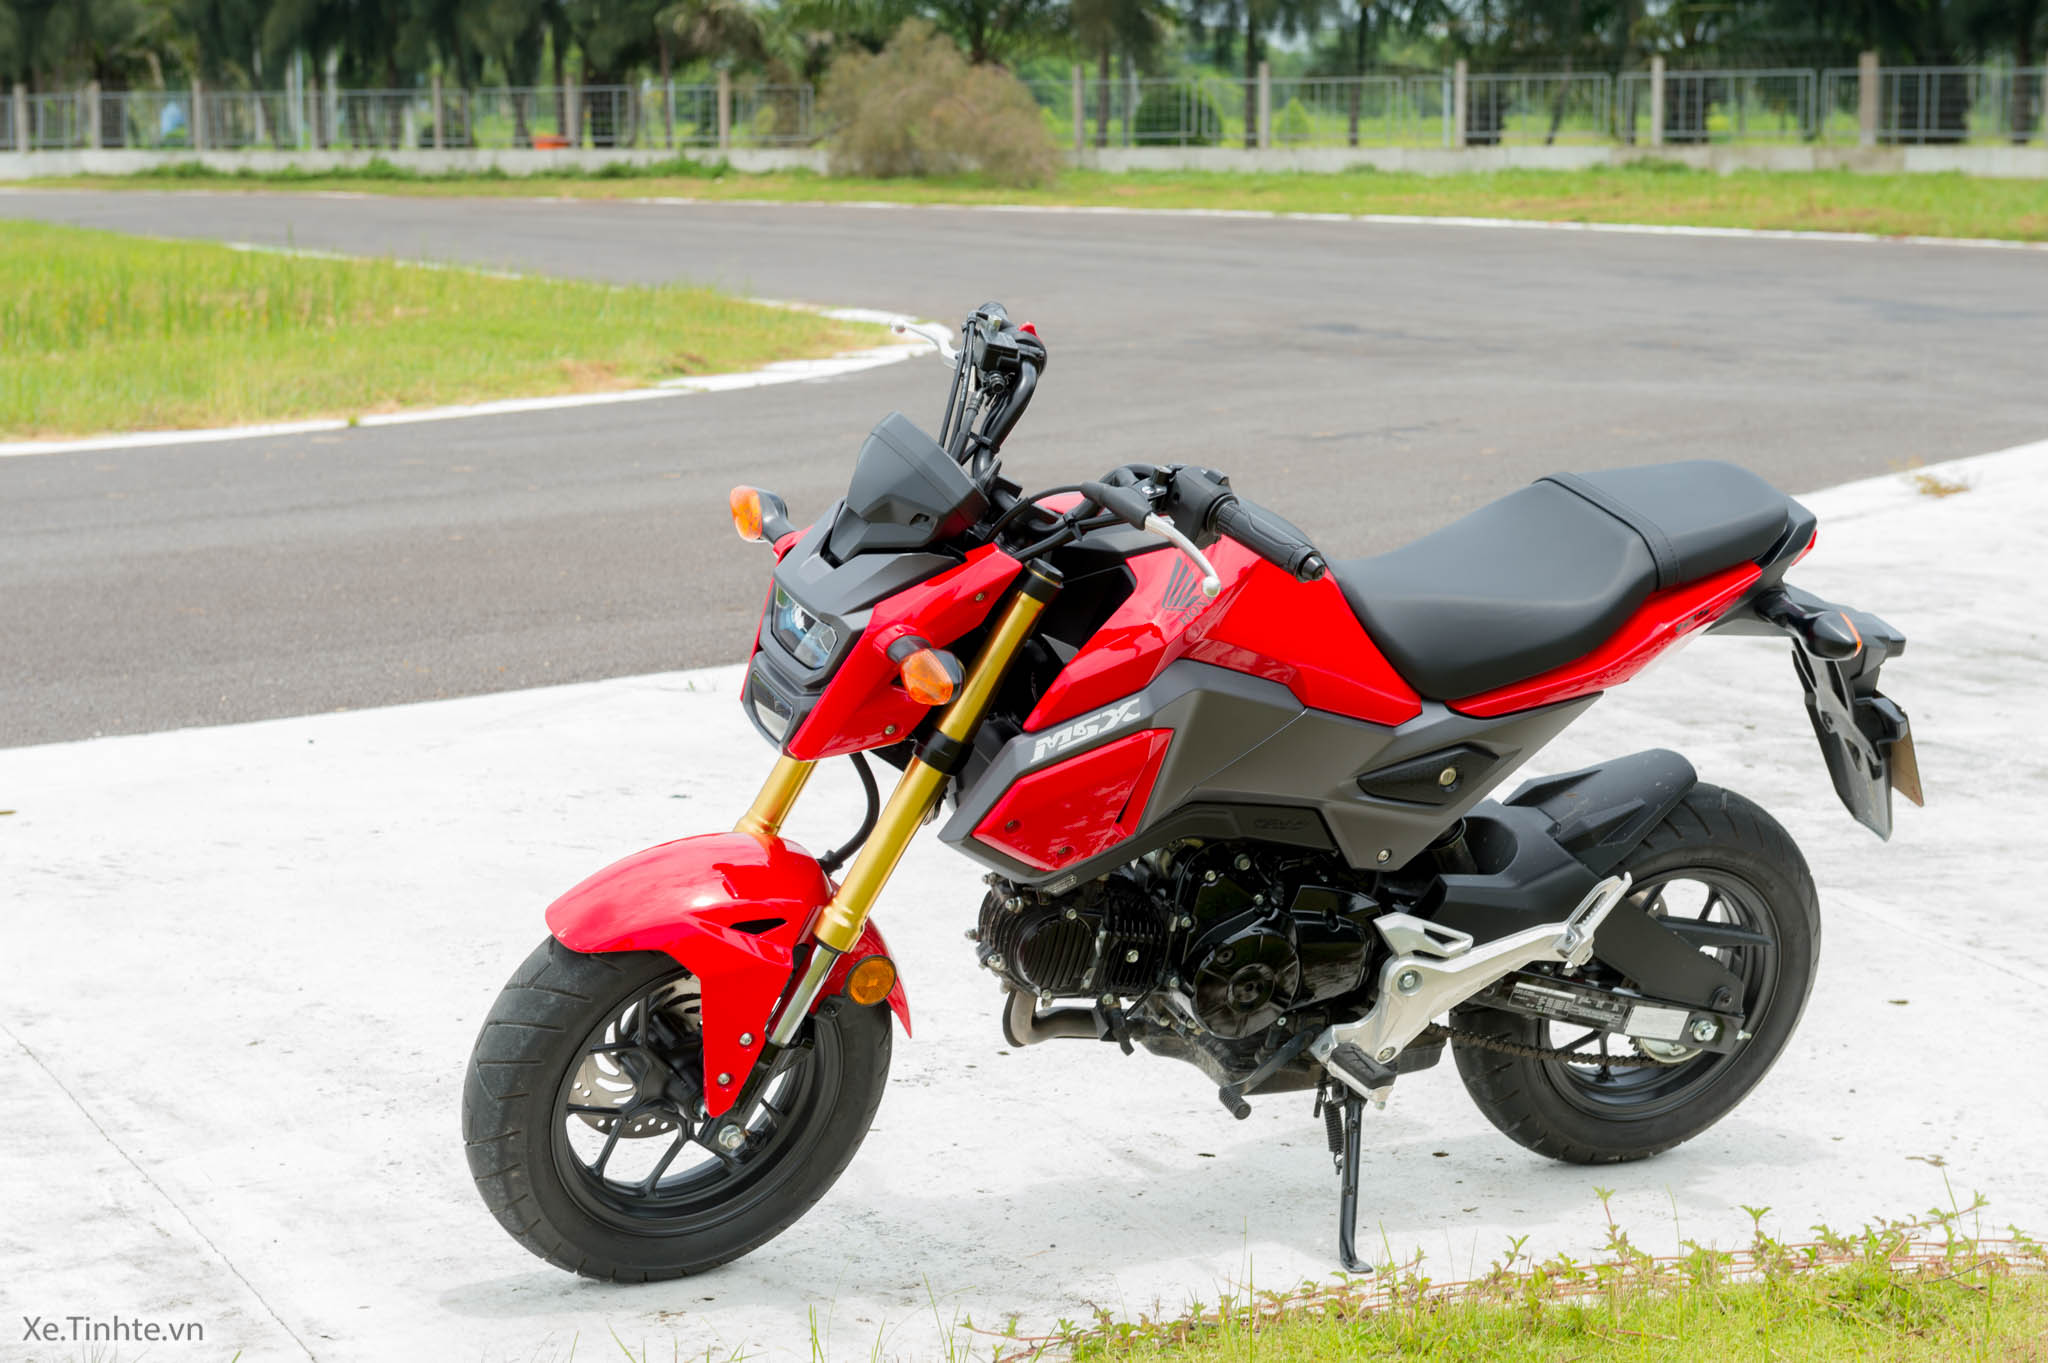 Thử nghiệm mức tiêu hao nhiên liệu Honda MSX 125 2017: 60 km/lít đường ...